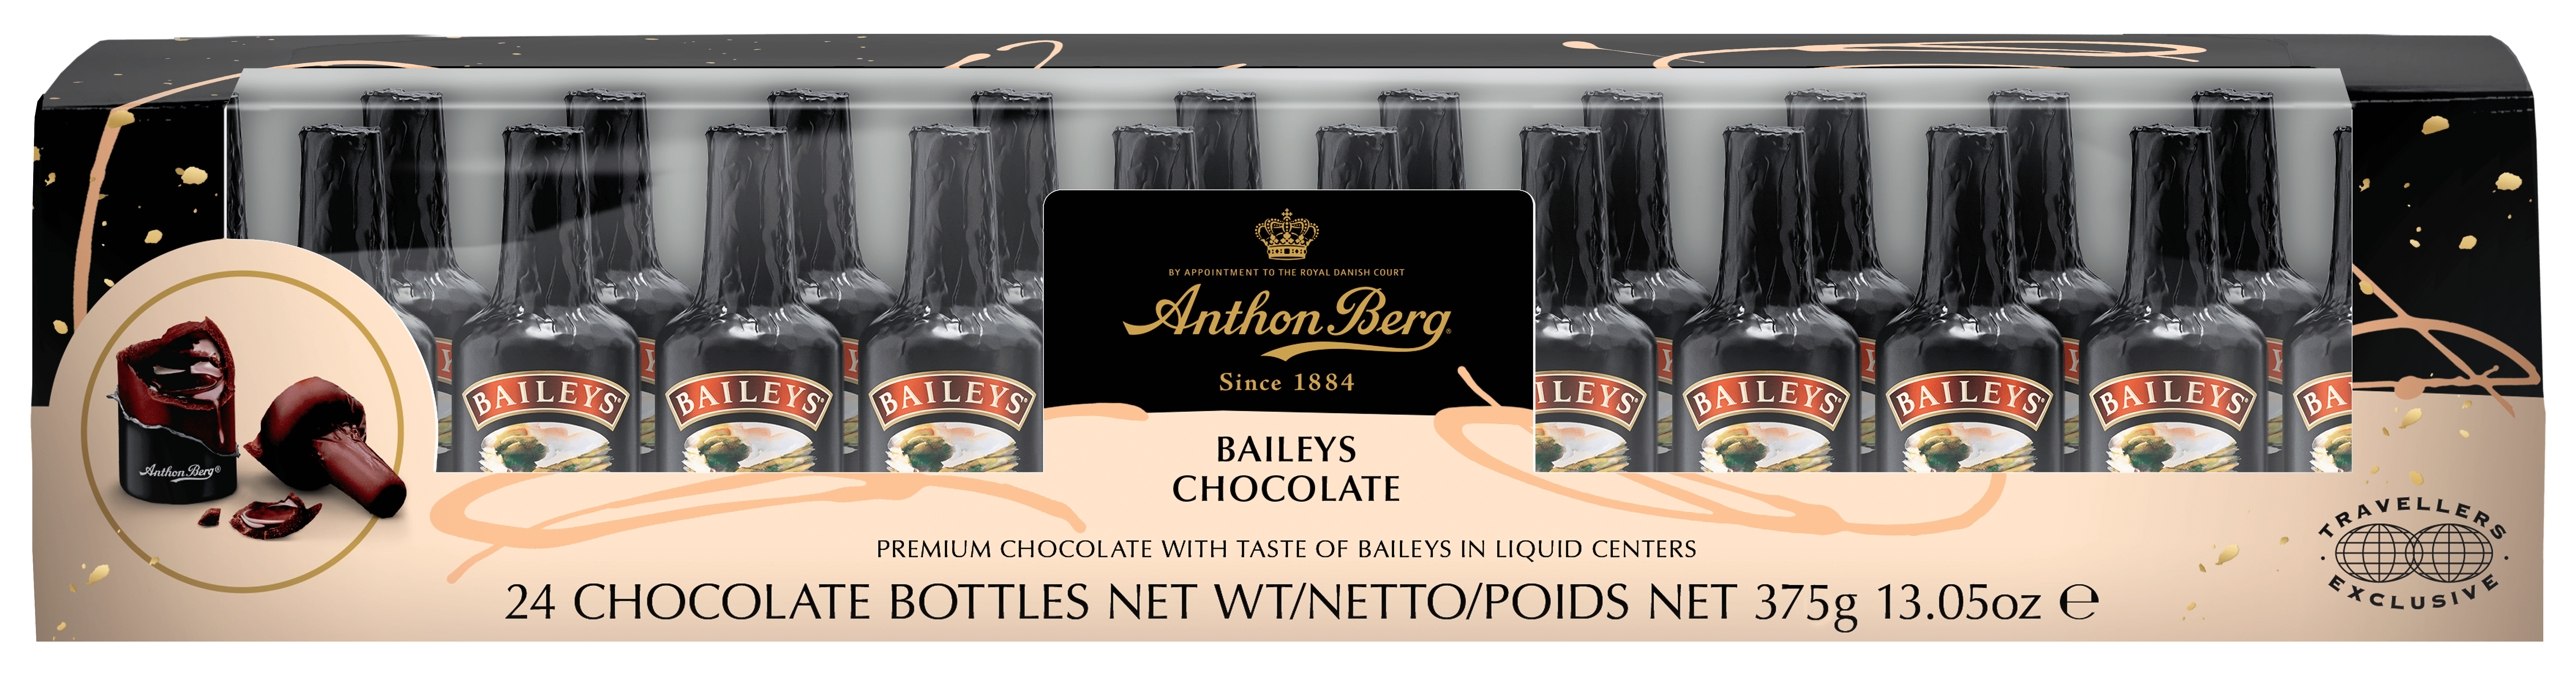 Anthon Berg launches Baileys Irish Cream chocolate bottles : The